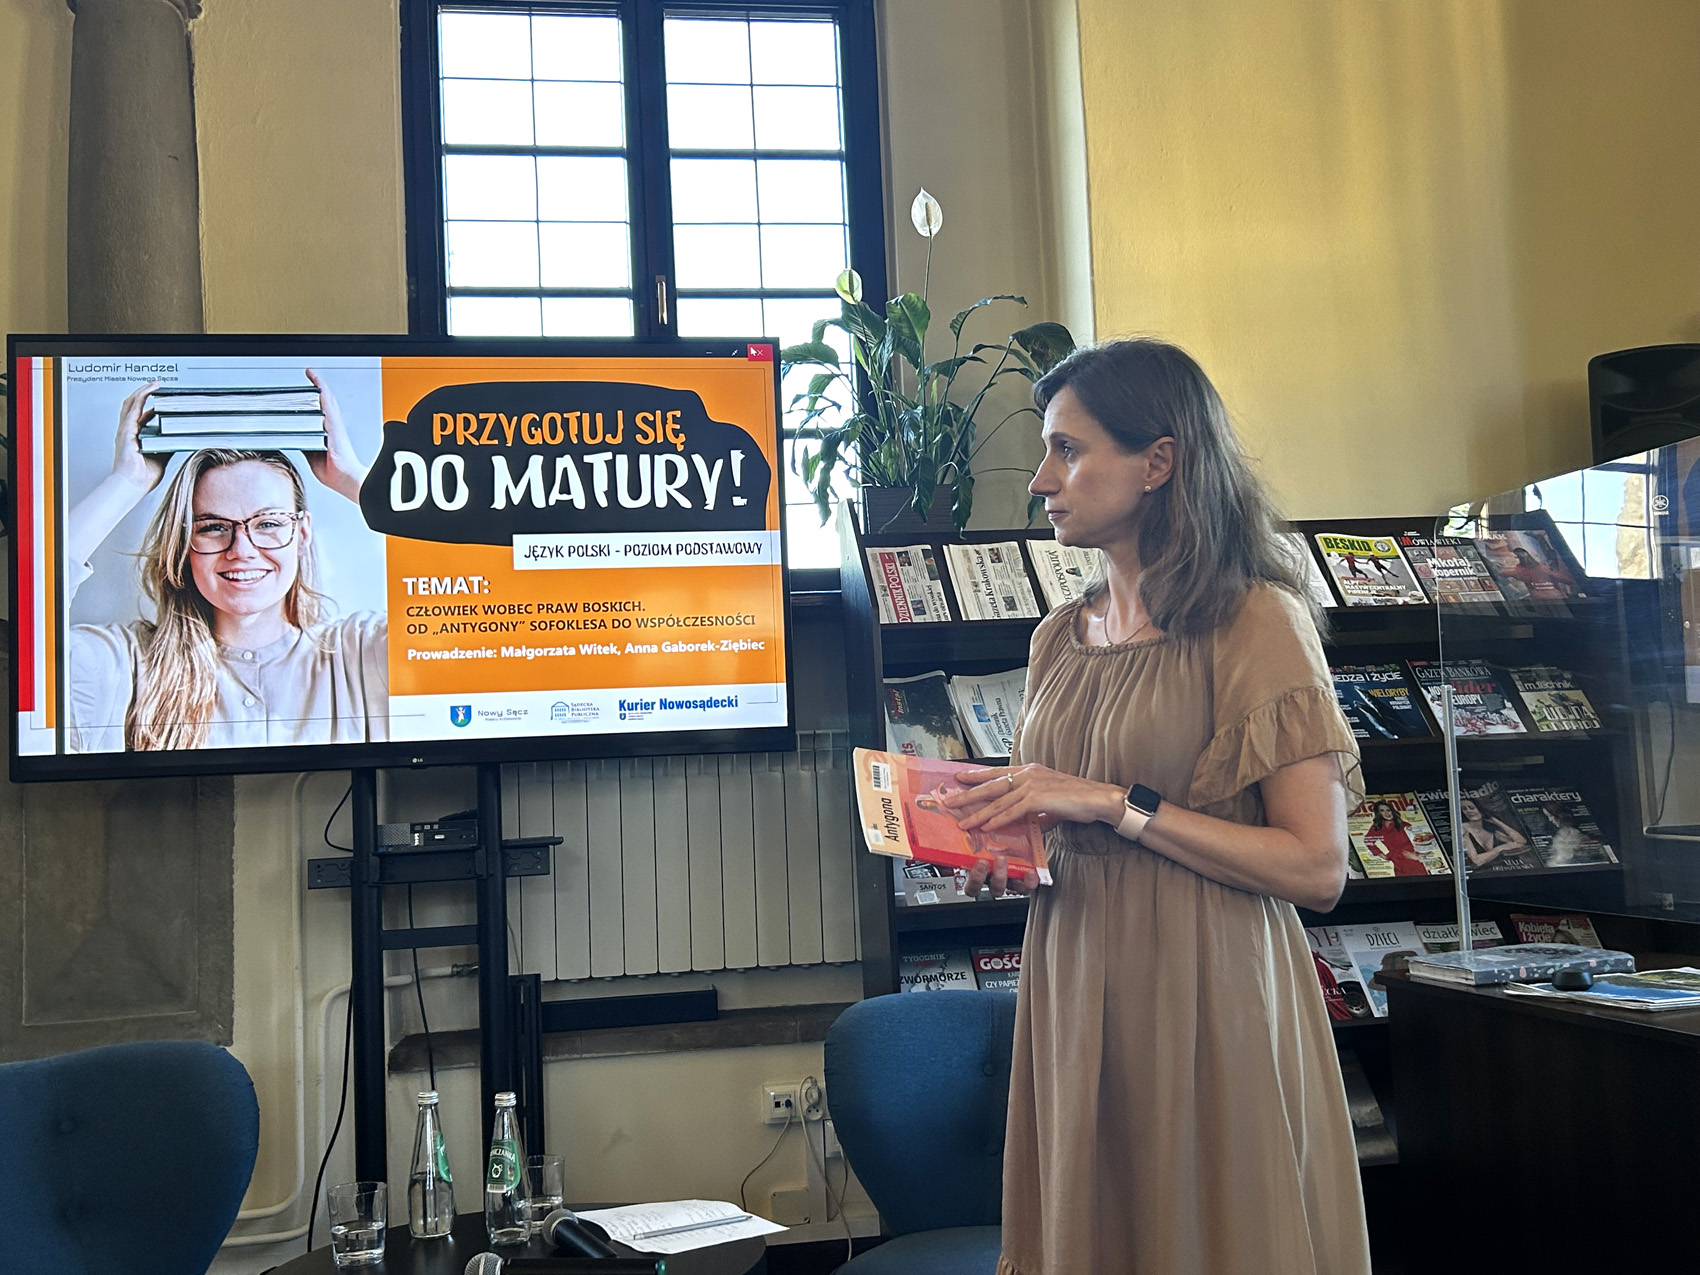 W pomieszczeniu stoi kobieta pokazana z boku, od kolan w górę. Kobieta trzyma w ręce książkę. Za nią po lewej stronie stoi duży ekran. Obok ekranu przy ścianie po prawej stronie stoi długi regał z czasopismami.